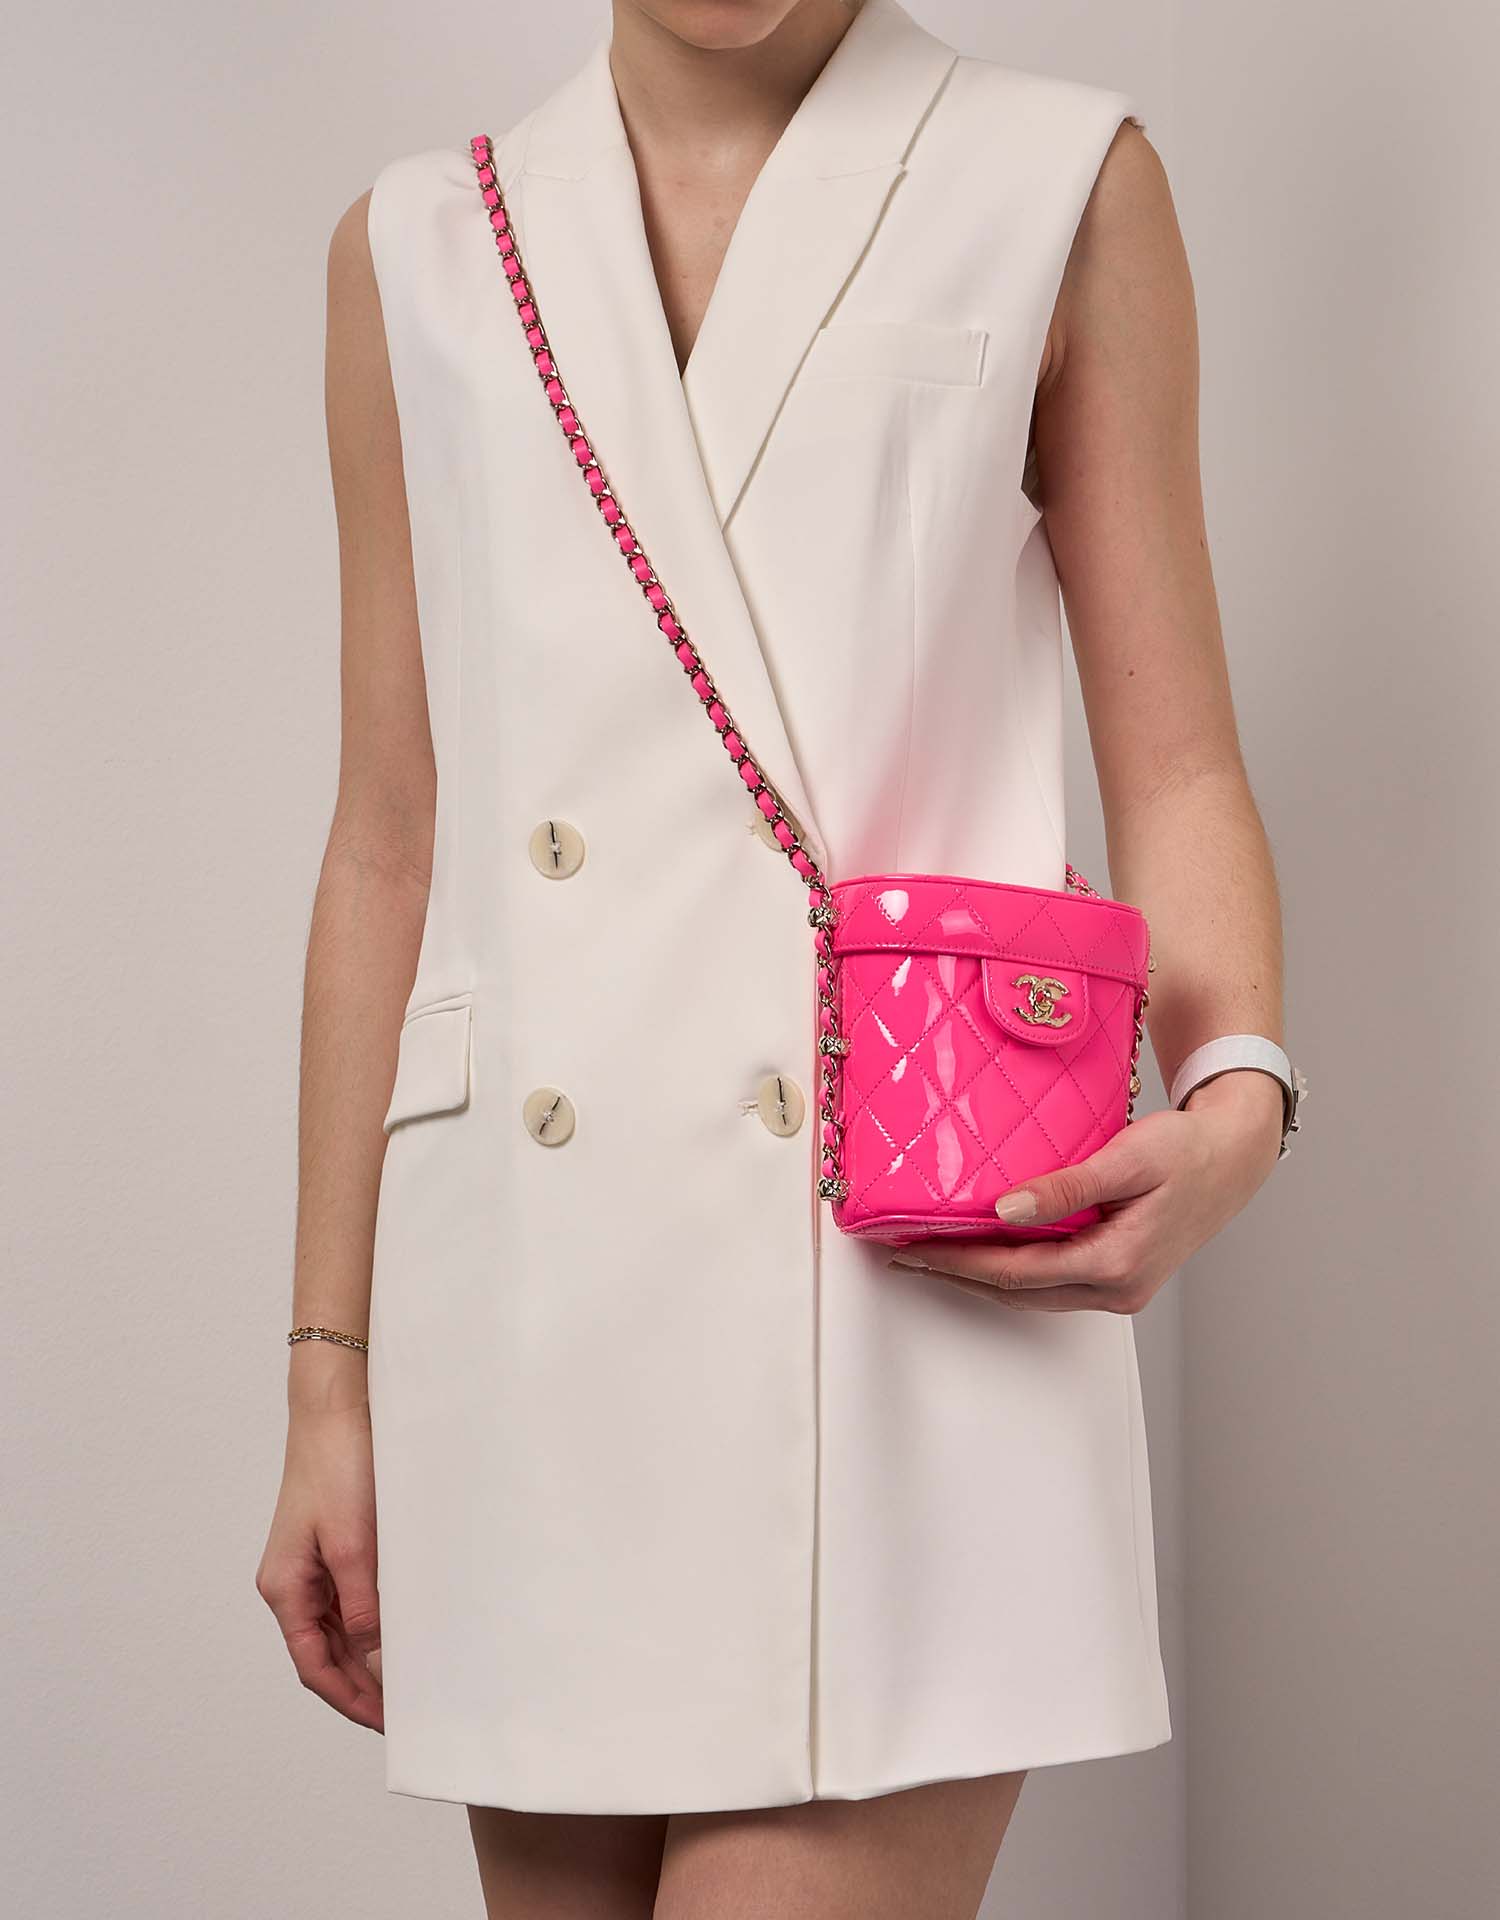 Chanel Vanity Small NeonPink 1M | Verkaufen Sie Ihre Designer-Tasche auf Saclab.com